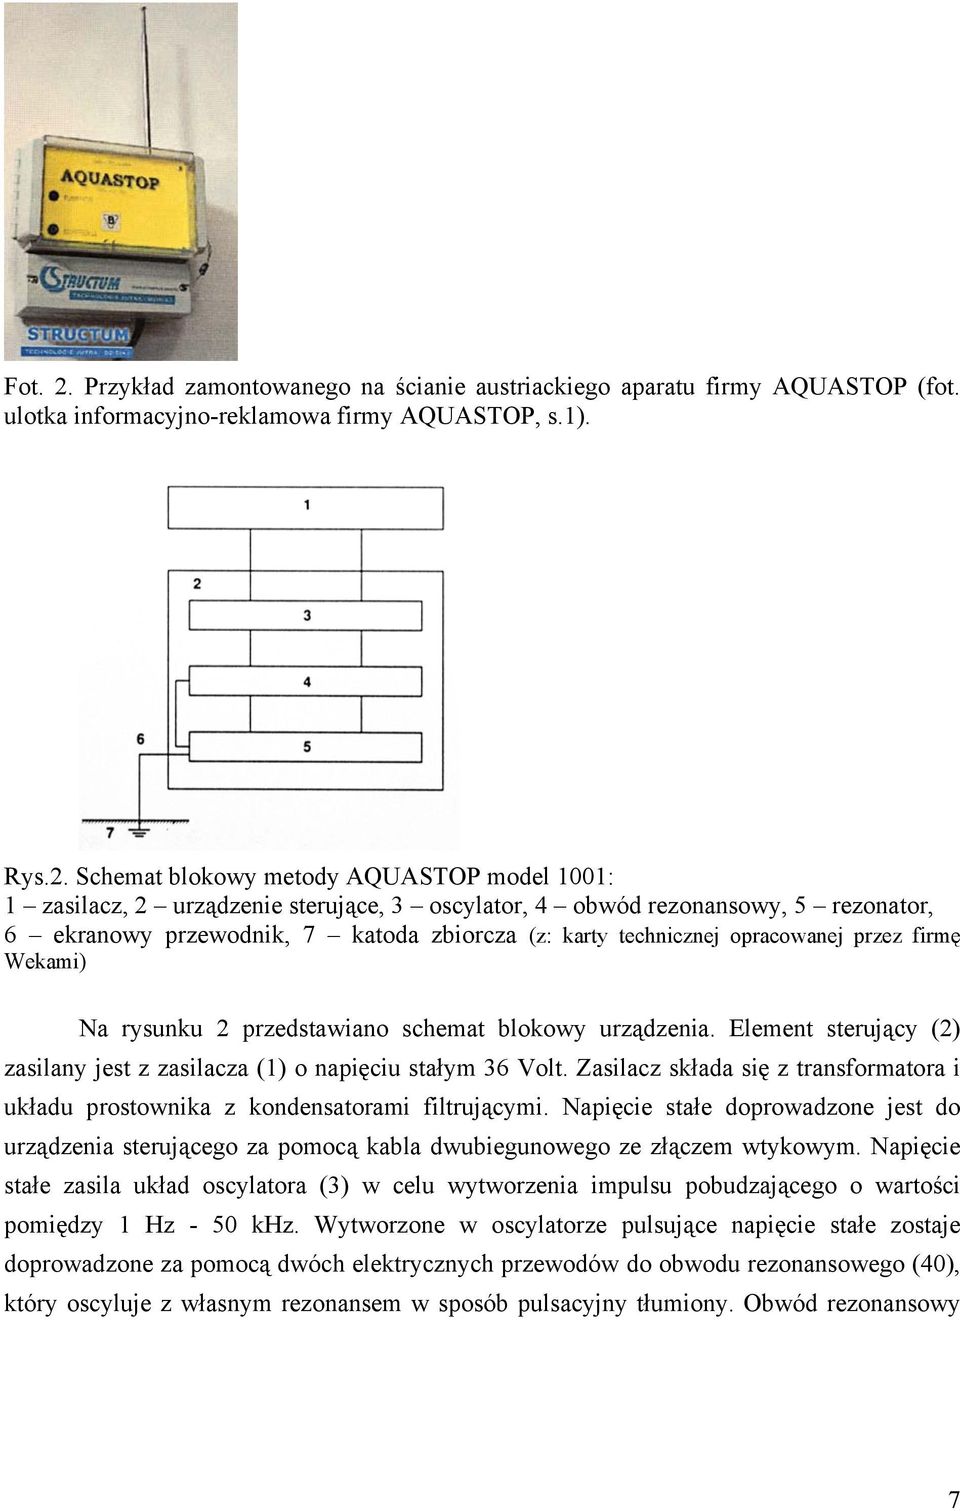 Schemat blokowy metody AQUASTOP model 1001: 1 zasilacz, 2 urządzenie sterujące, 3 oscylator, 4 obwód rezonansowy, 5 rezonator, 6 ekranowy przewodnik, 7 katoda zbiorcza (z: karty technicznej